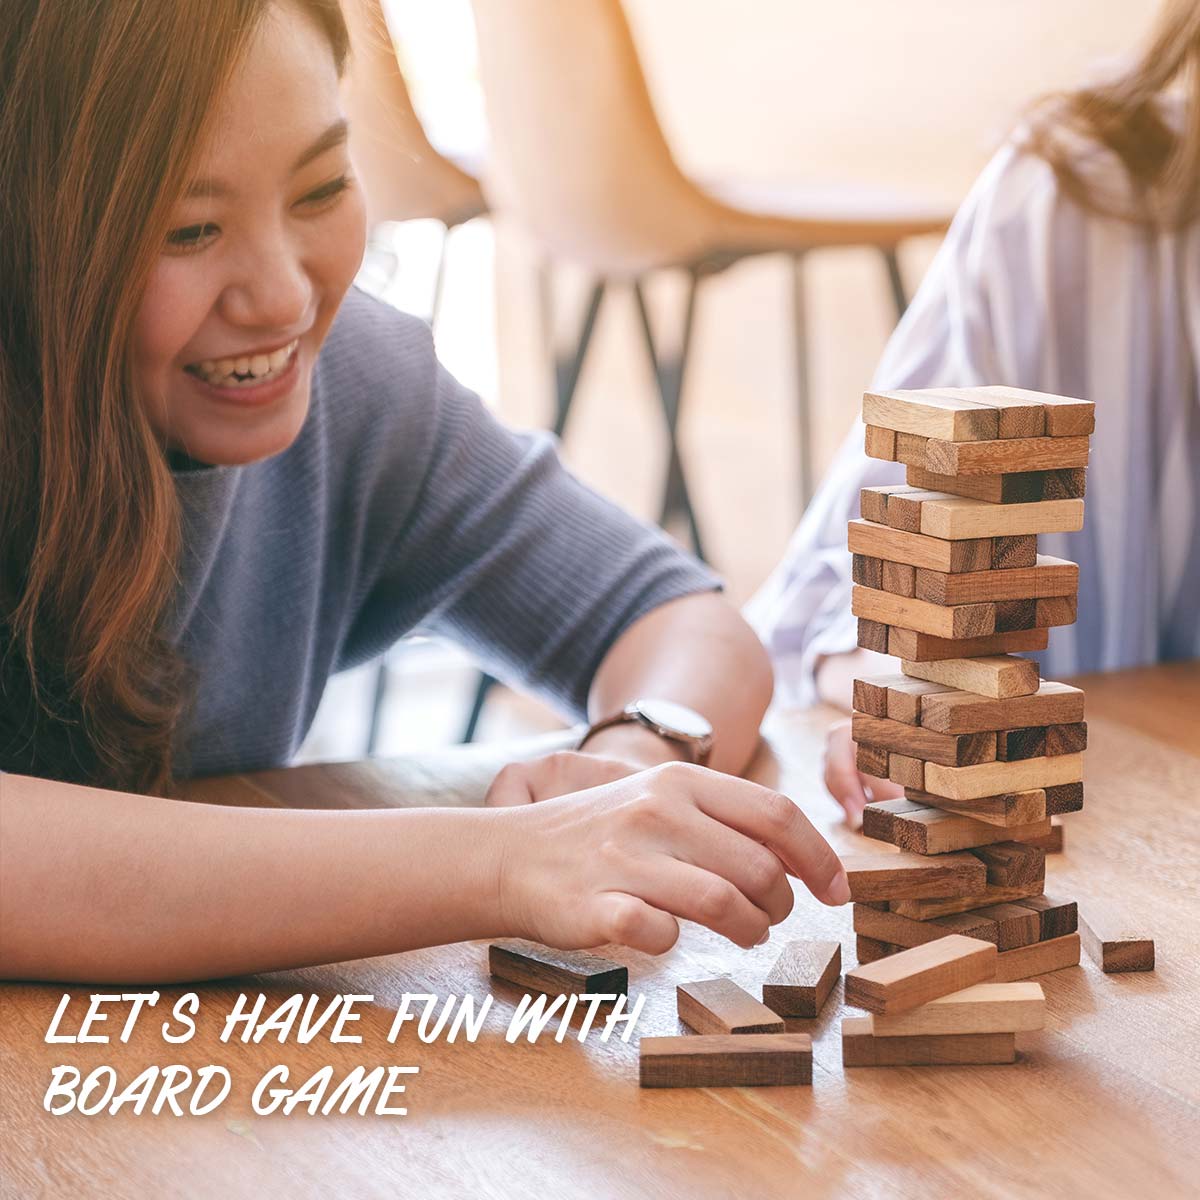 鬥智鬥力燒腦！好玩桌上遊戲 Let's have Fun with Board Game